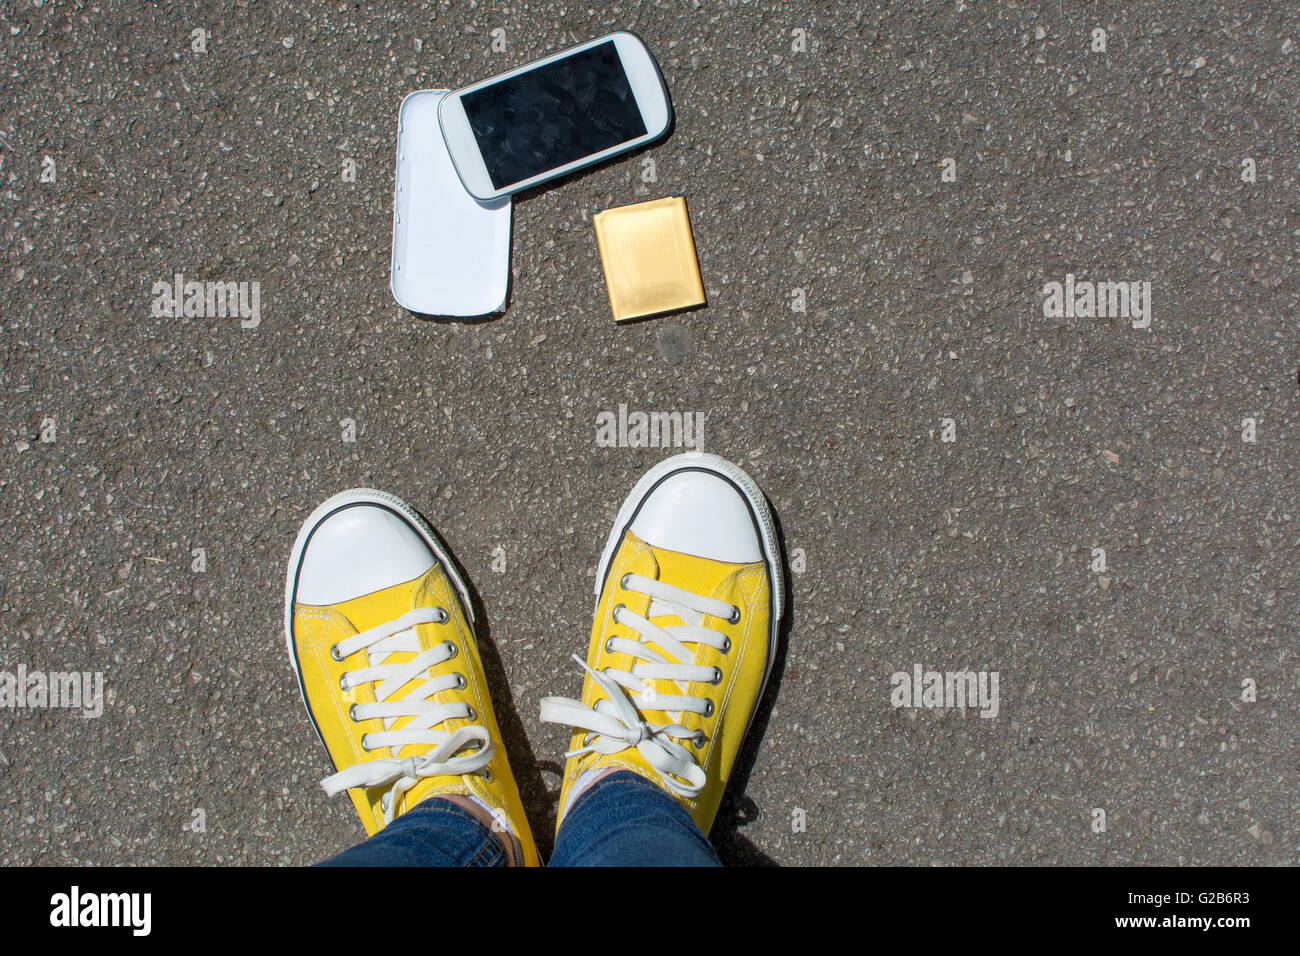 Smartphone démonté sur le sol devant personne. Point de vue à la première personne Banque D'Images